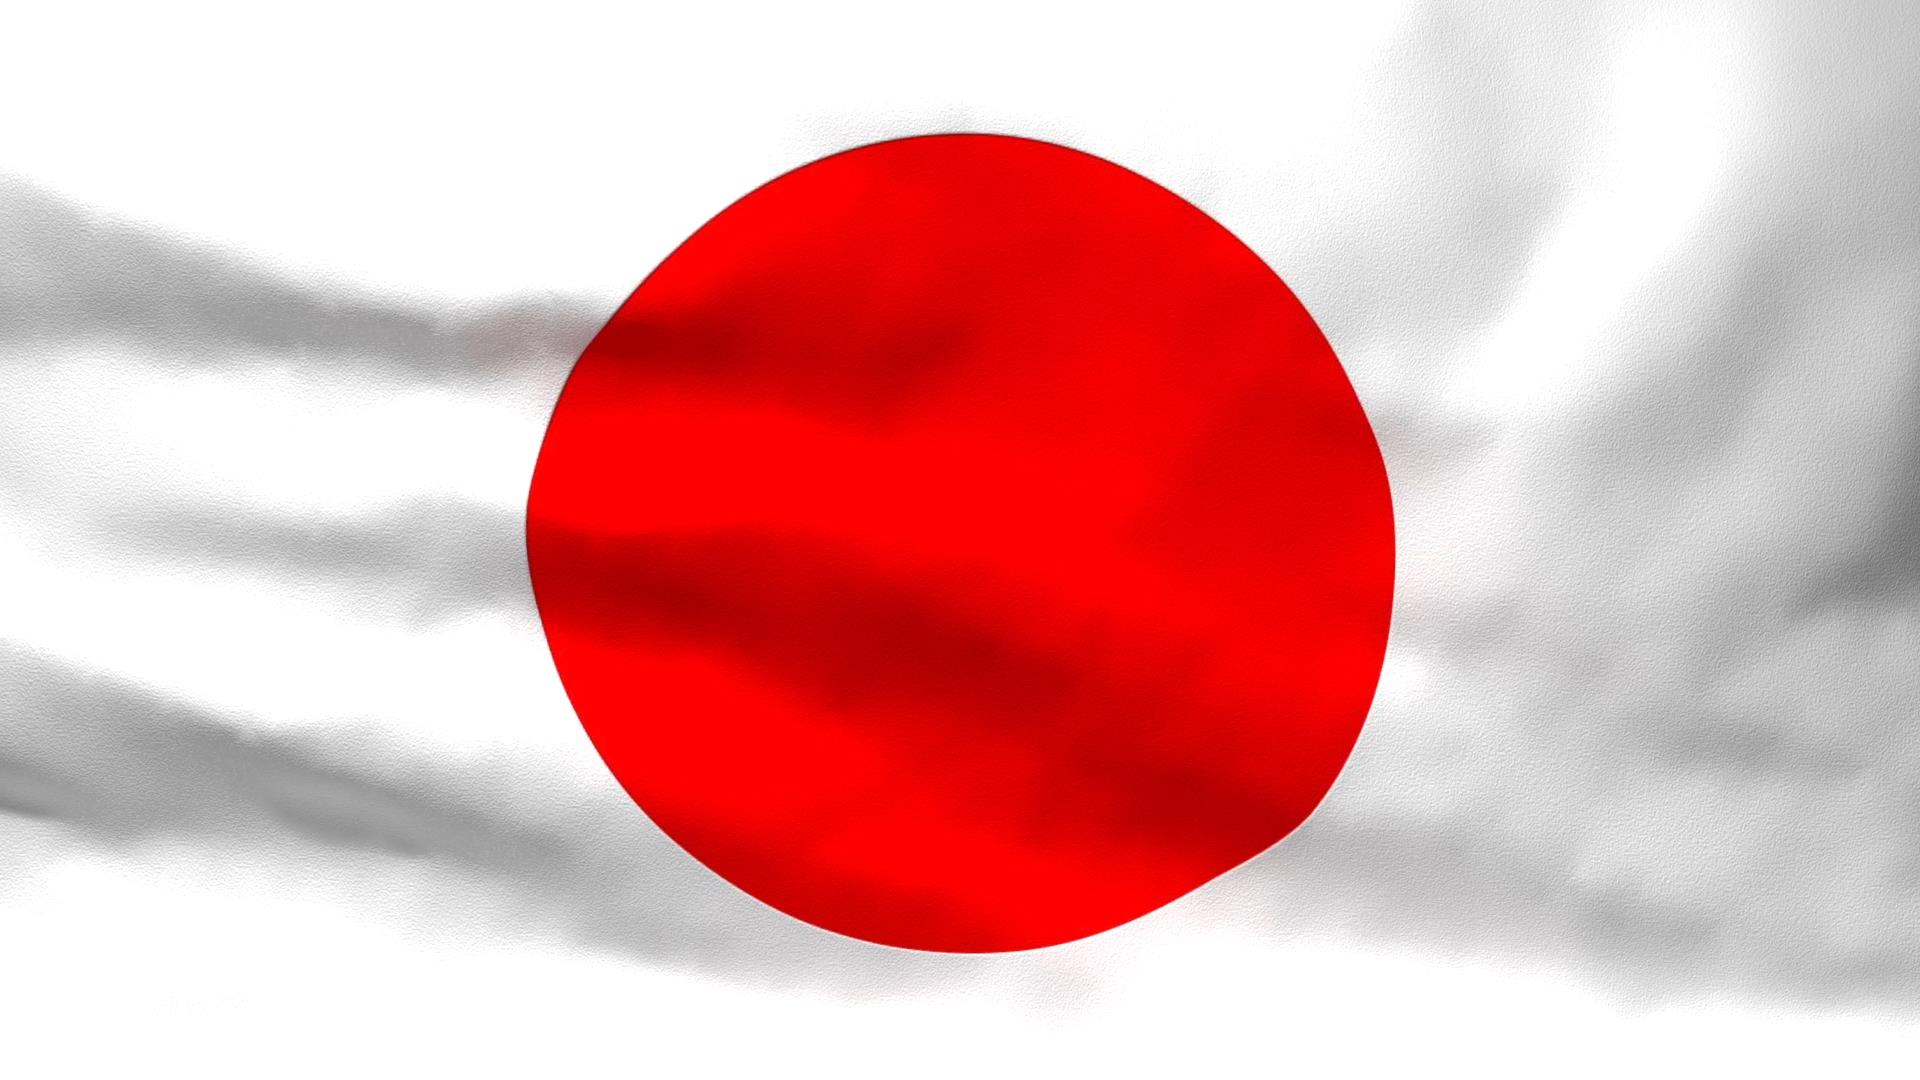 Quốc kỳ Nhật Bản ý nghĩa: Nhật Bản là một quốc gia có nền văn hóa phát triển, rất đặc trưng với những giá trị văn hóa và tinh thần. Quốc kỳ Nhật Bản, hay còn gọi là Hinomaru, tượng trưng cho sự tự hào và lòng yêu nước của người Nhật. Sắc đỏ trên nền trắng thể hiện sức mạnh, tinh thần đoàn kết, danh dự và thời đại mới. Cùng chiêm ngưỡng hình ảnh về Quốc kỳ Nhật Bản để cảm nhận sức mạnh của nền văn hoá Nhật Bản đến bạn!